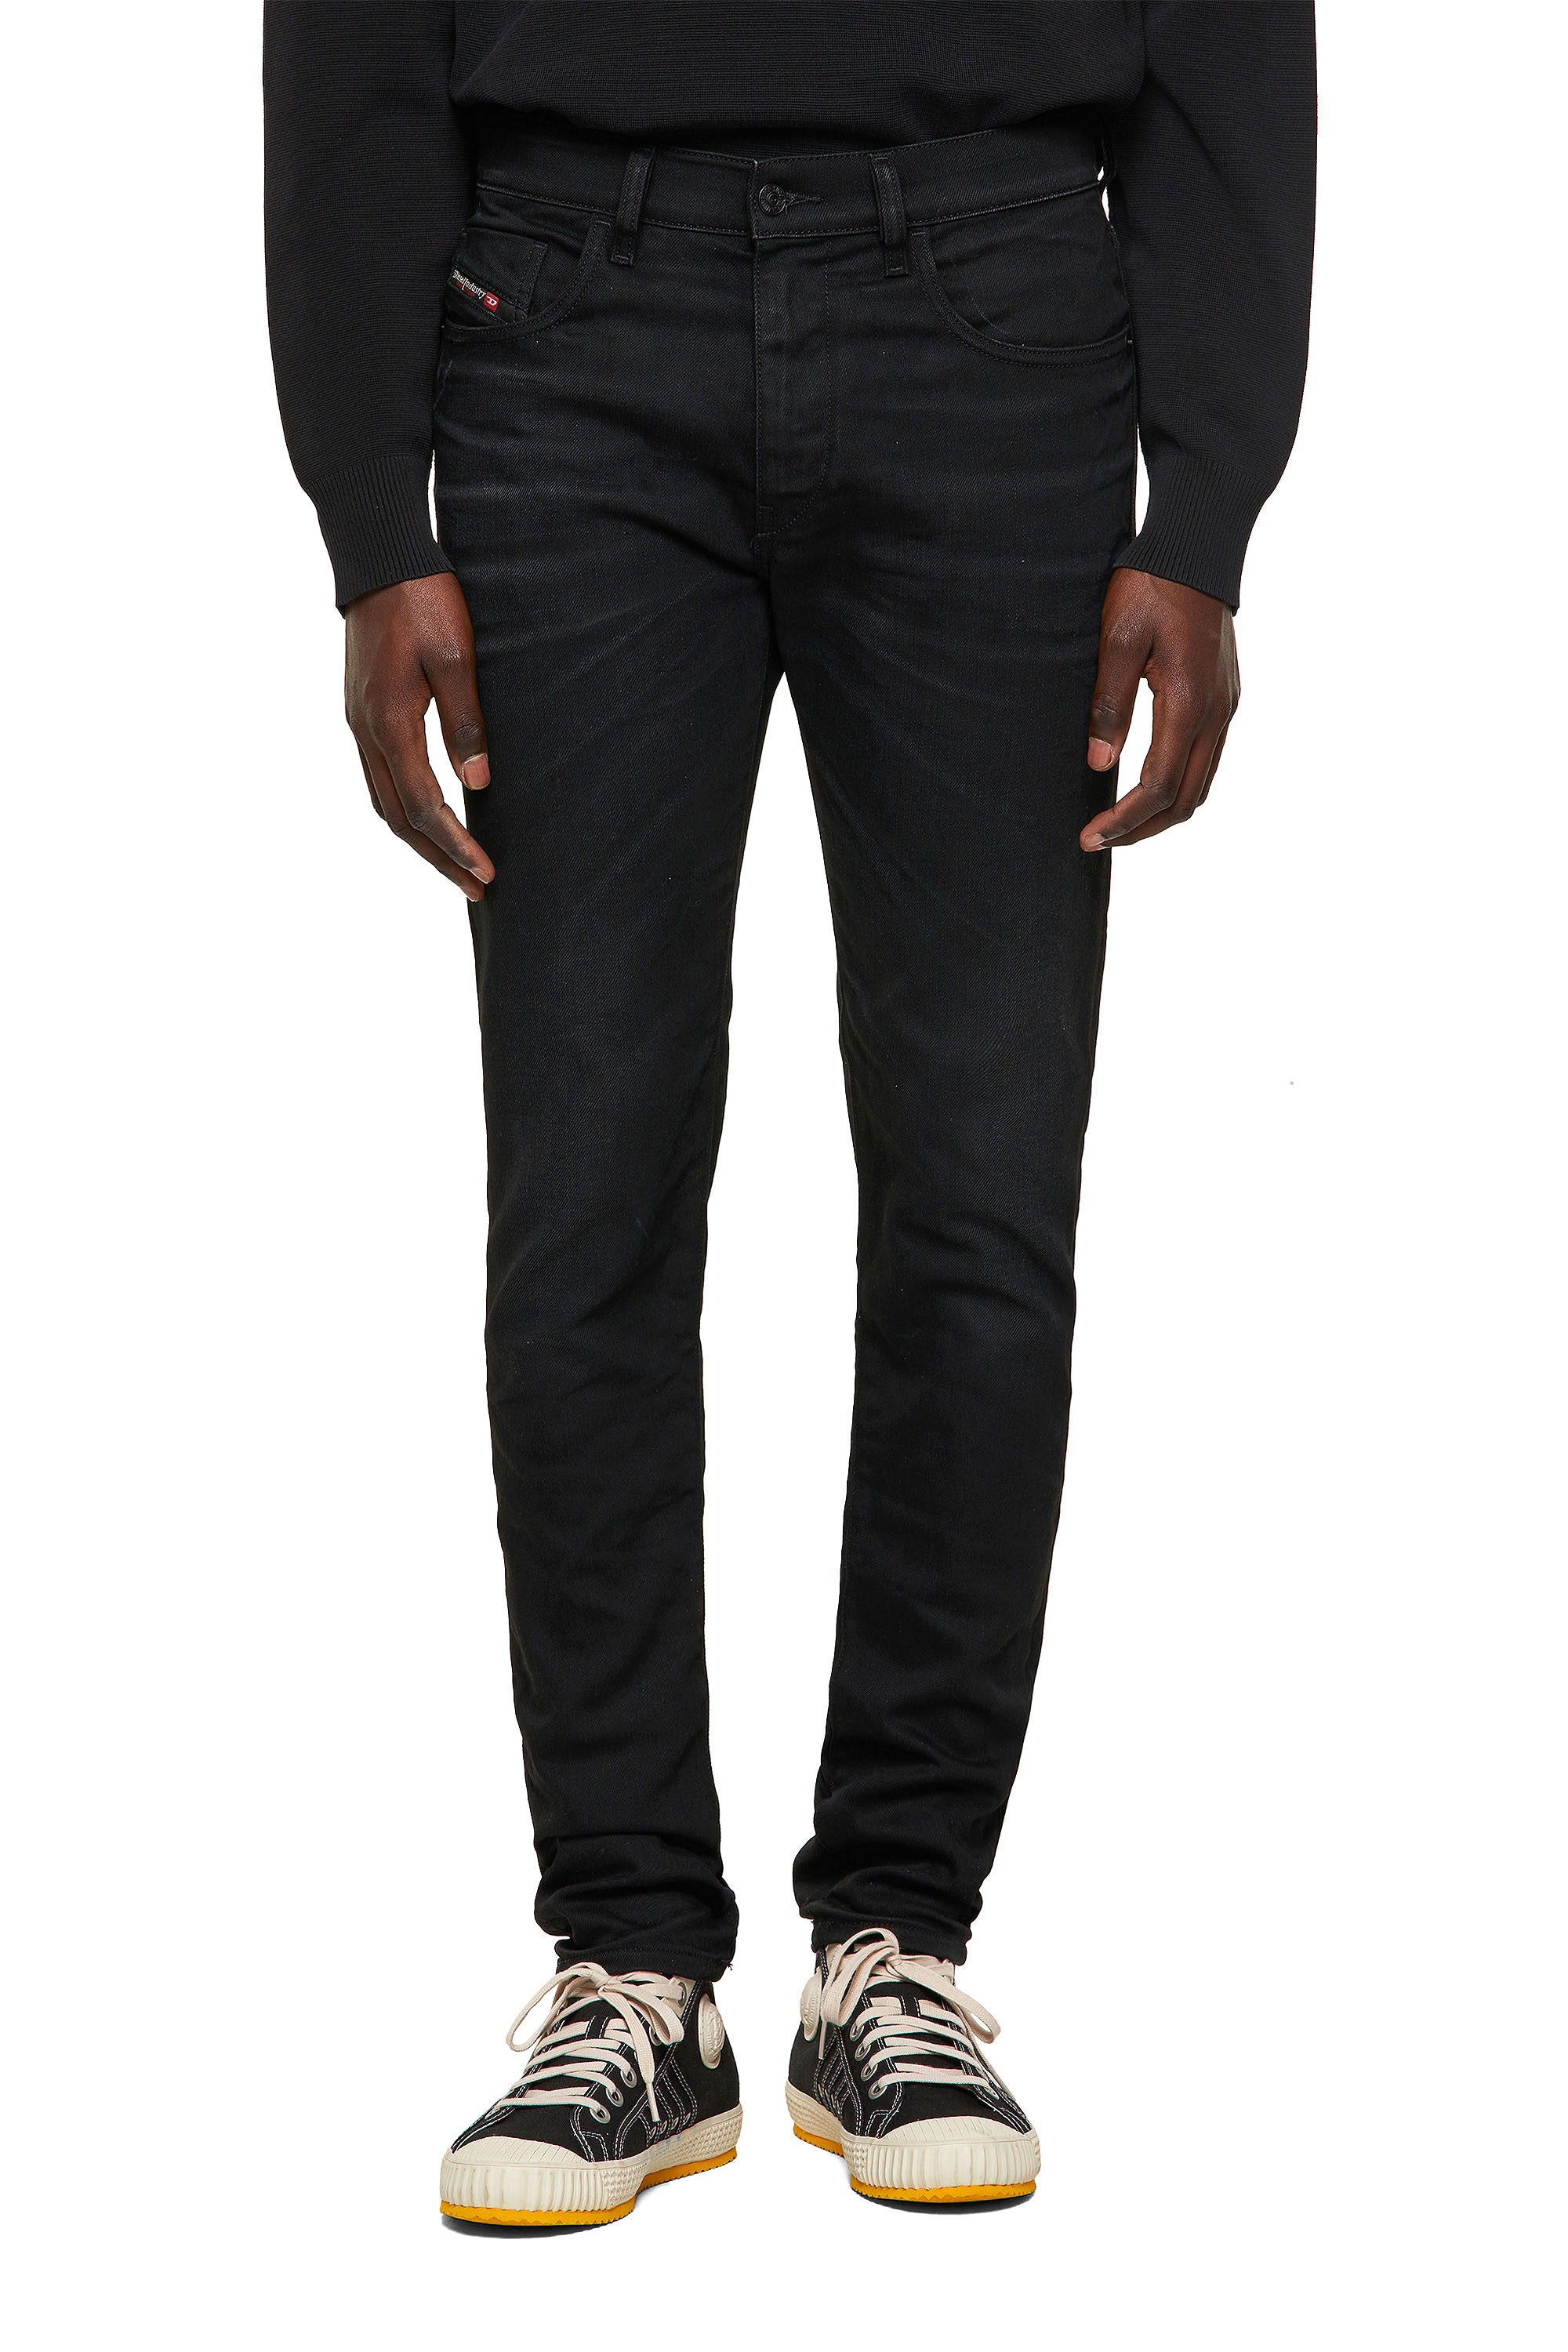 D-Strukt 09A15 Man: Slim Black/Dark grey Jeans | Diesel